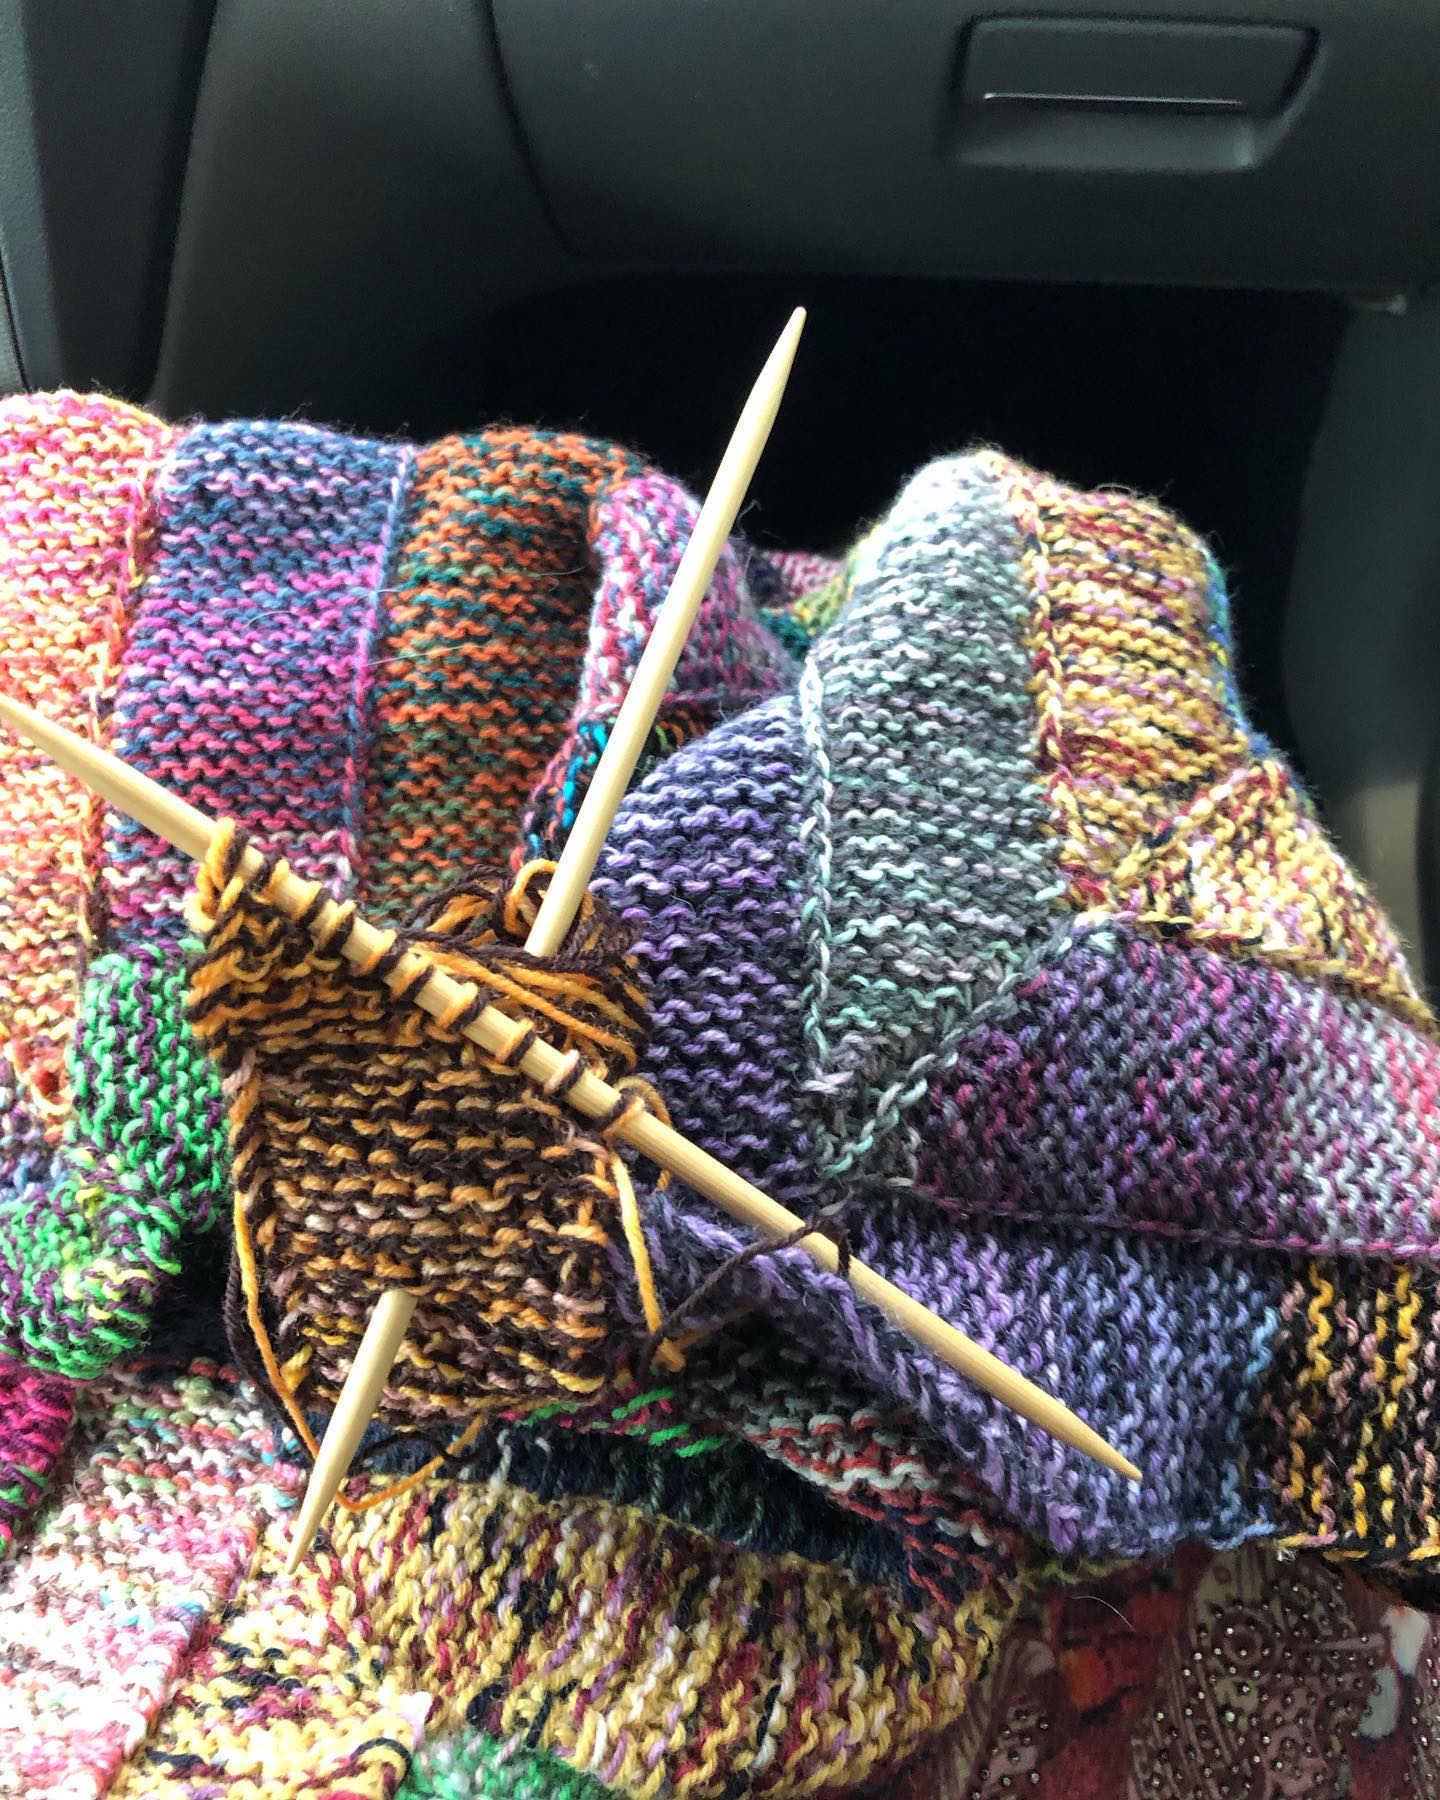 Unterwegs wächst die Reste Decke am schnellsten und die Beine sind auch gleich schön warm 😊. 
#knitting #knittersofinstagram #knit #reste #stash #decke #deckenporno #sockenwolle #bunt #menden #sauerland #10stichblanket